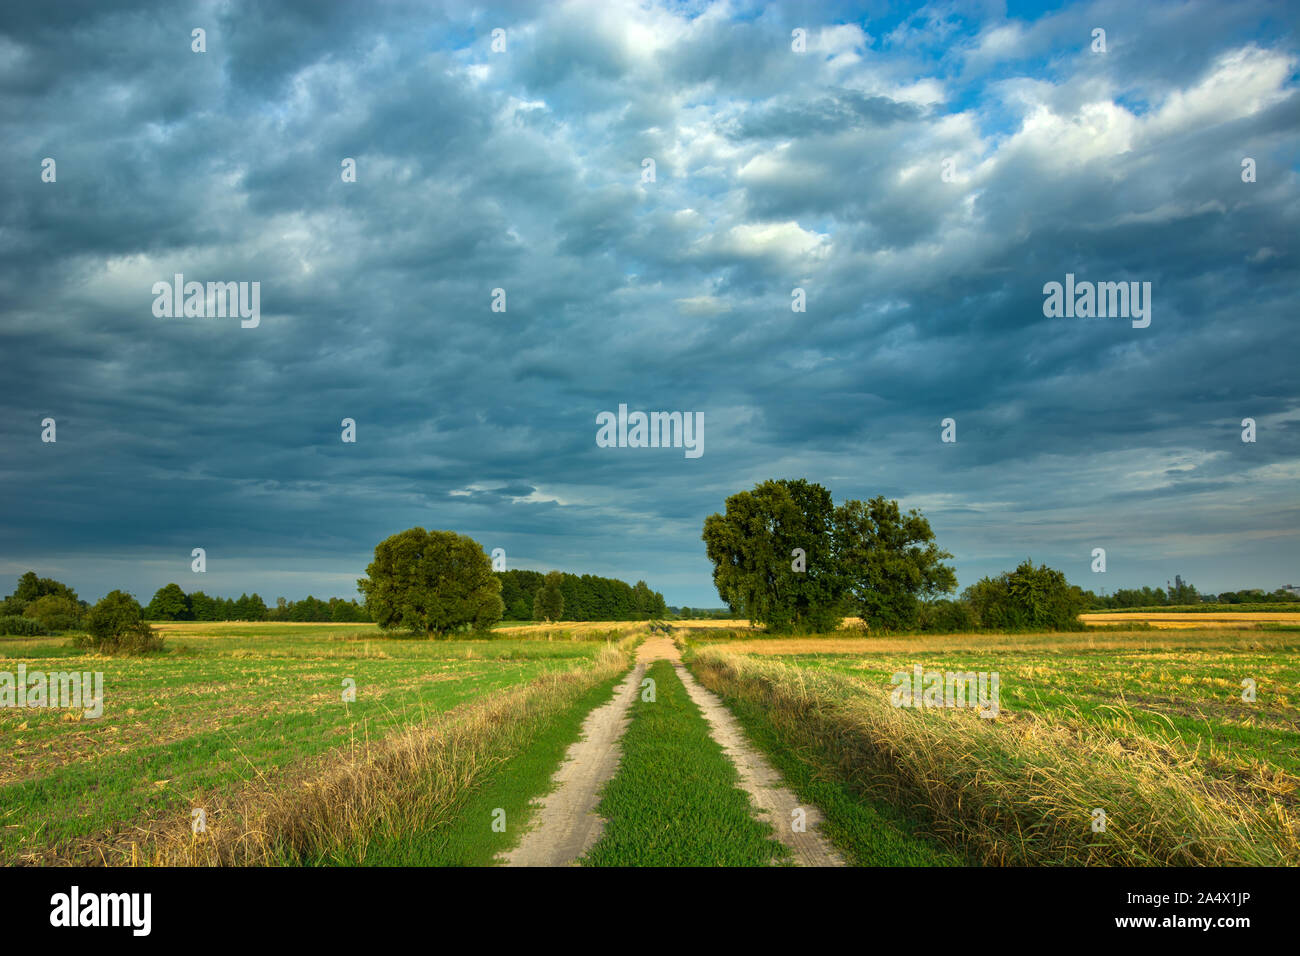 La strada attraverso campi e piovosa scure nuvole nel cielo Foto Stock